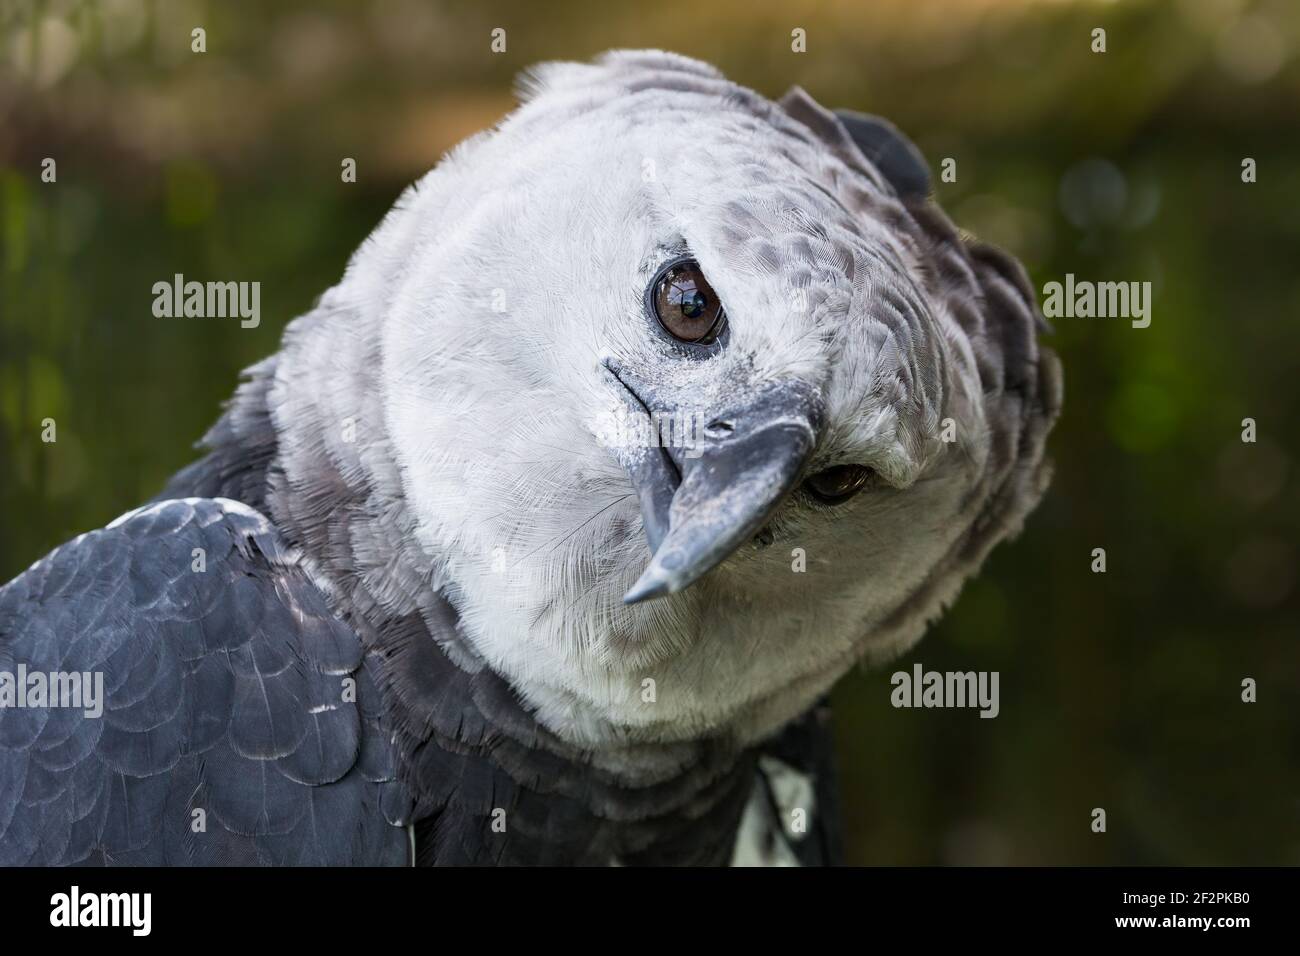 Harpy eagle Harpija, The harpy eagle (Harpia harpyja) is a …